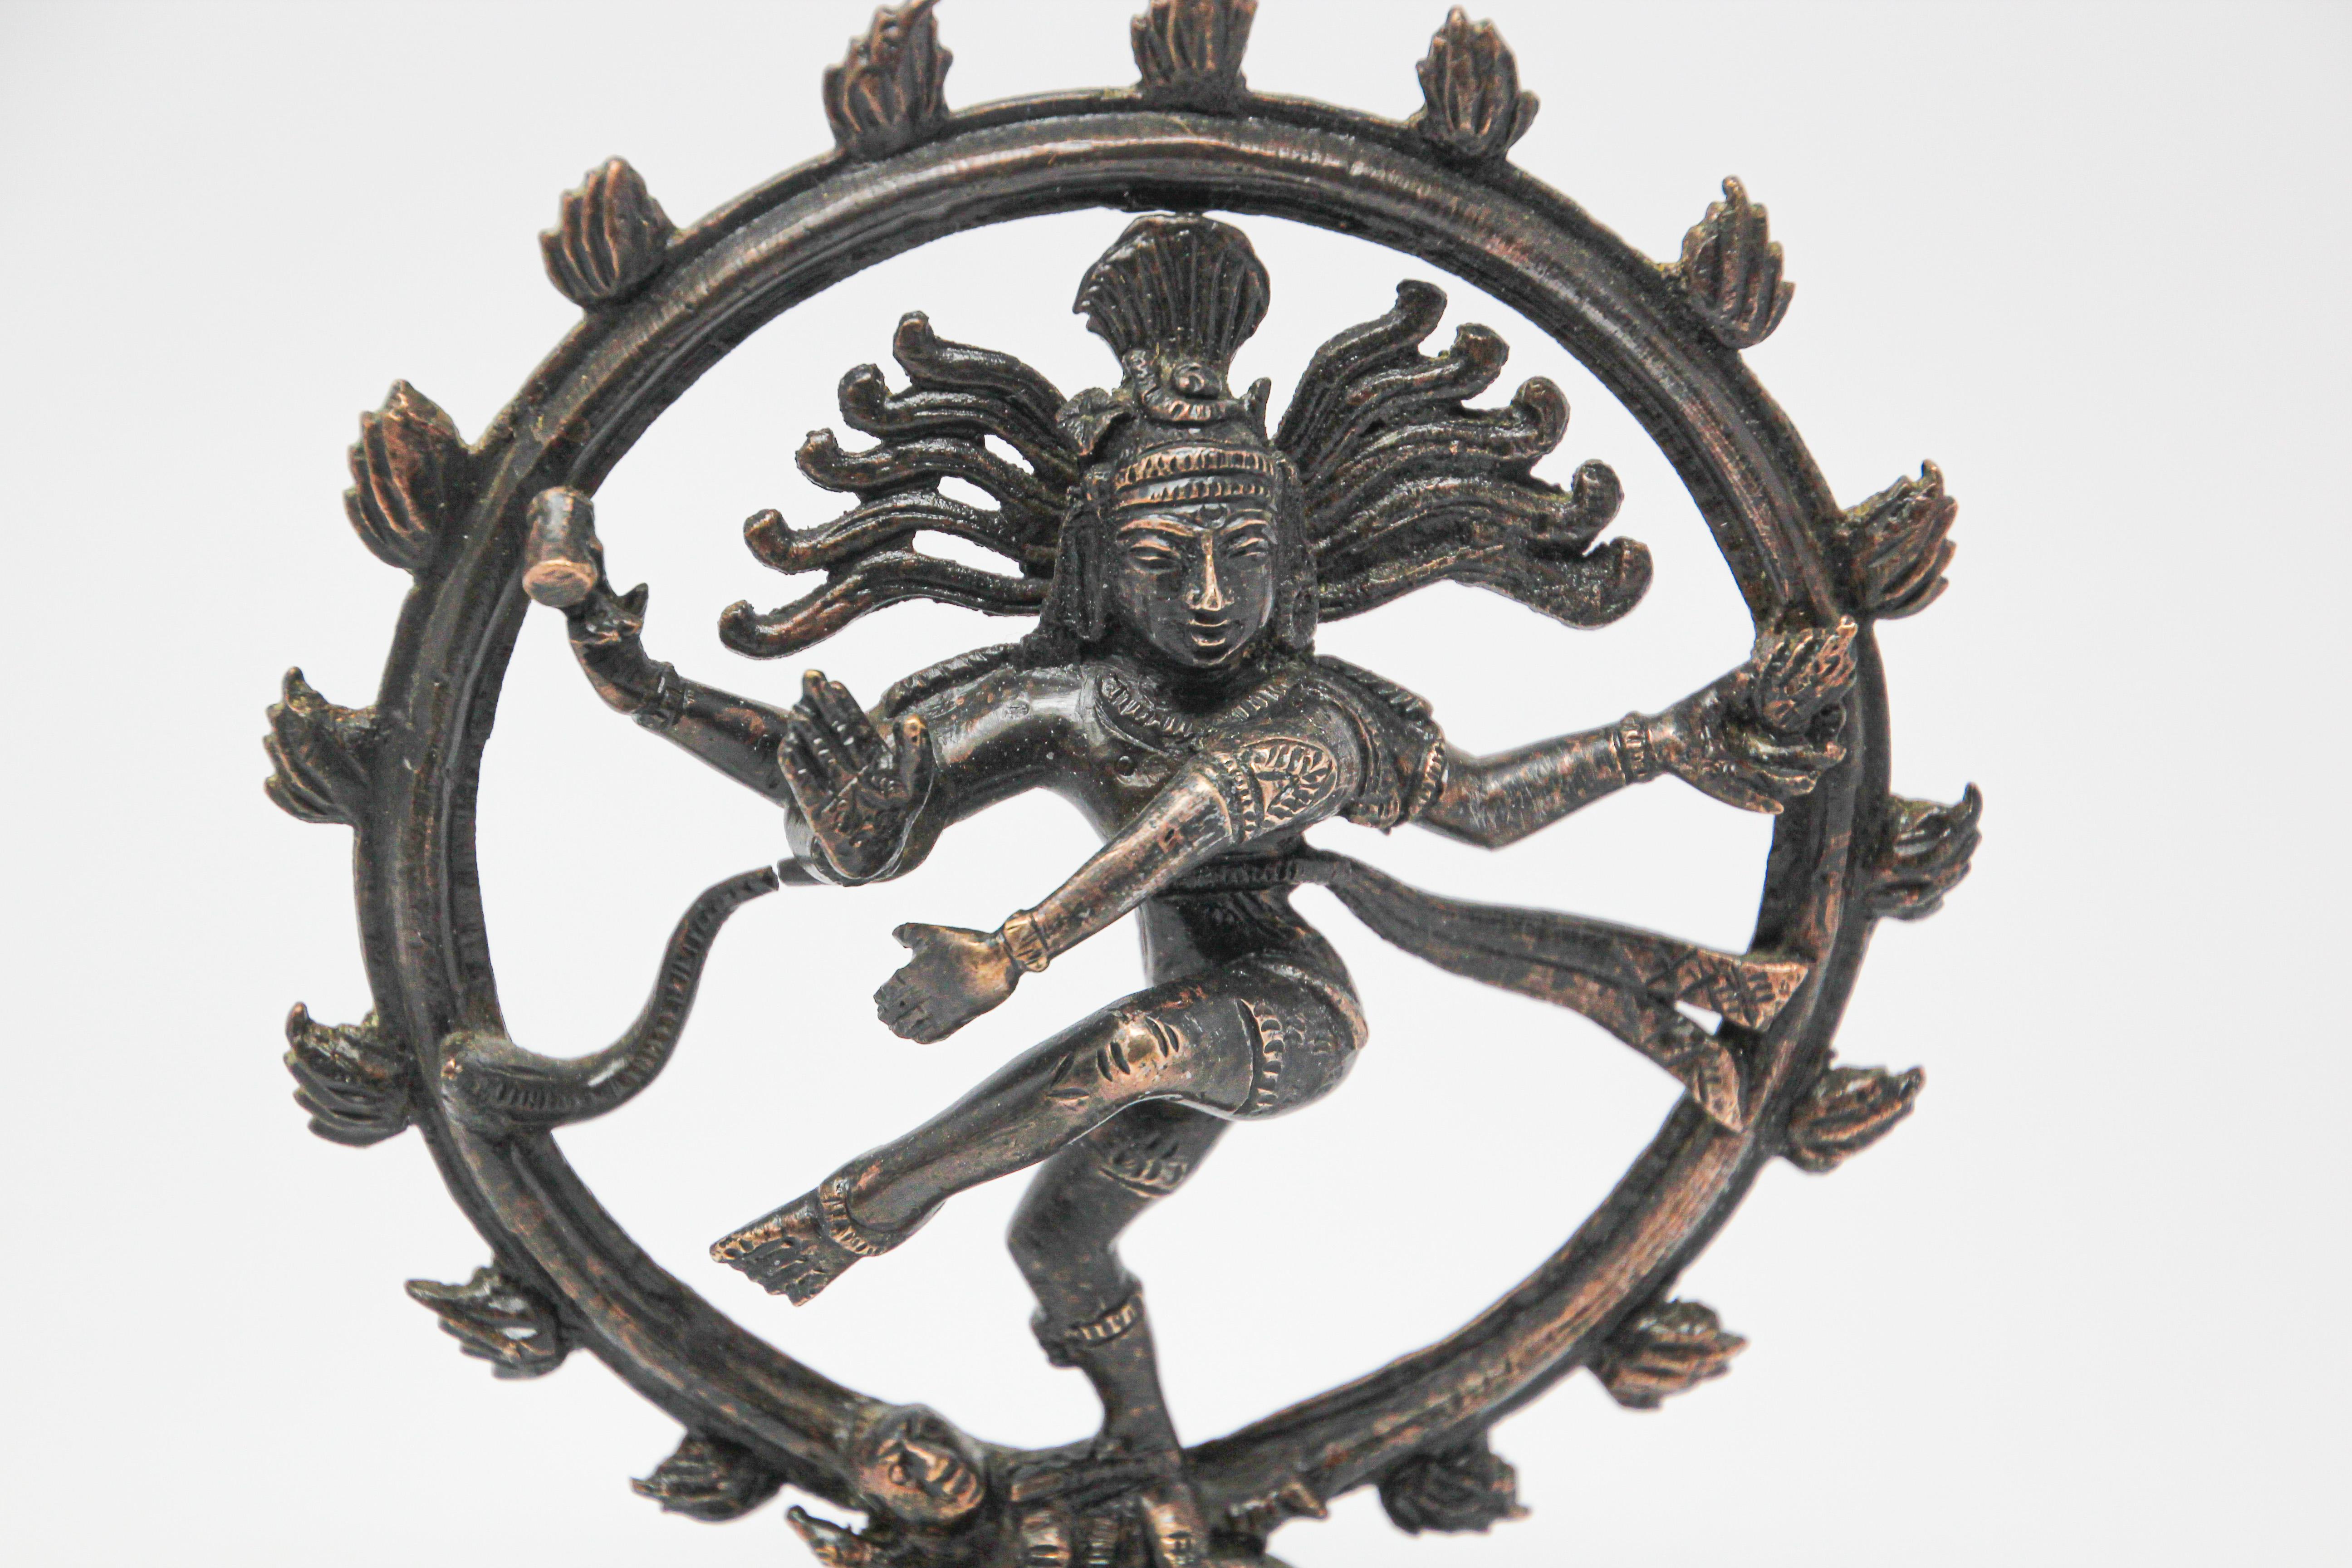 Indian patinated bronze statue of Shiva Nataraja
